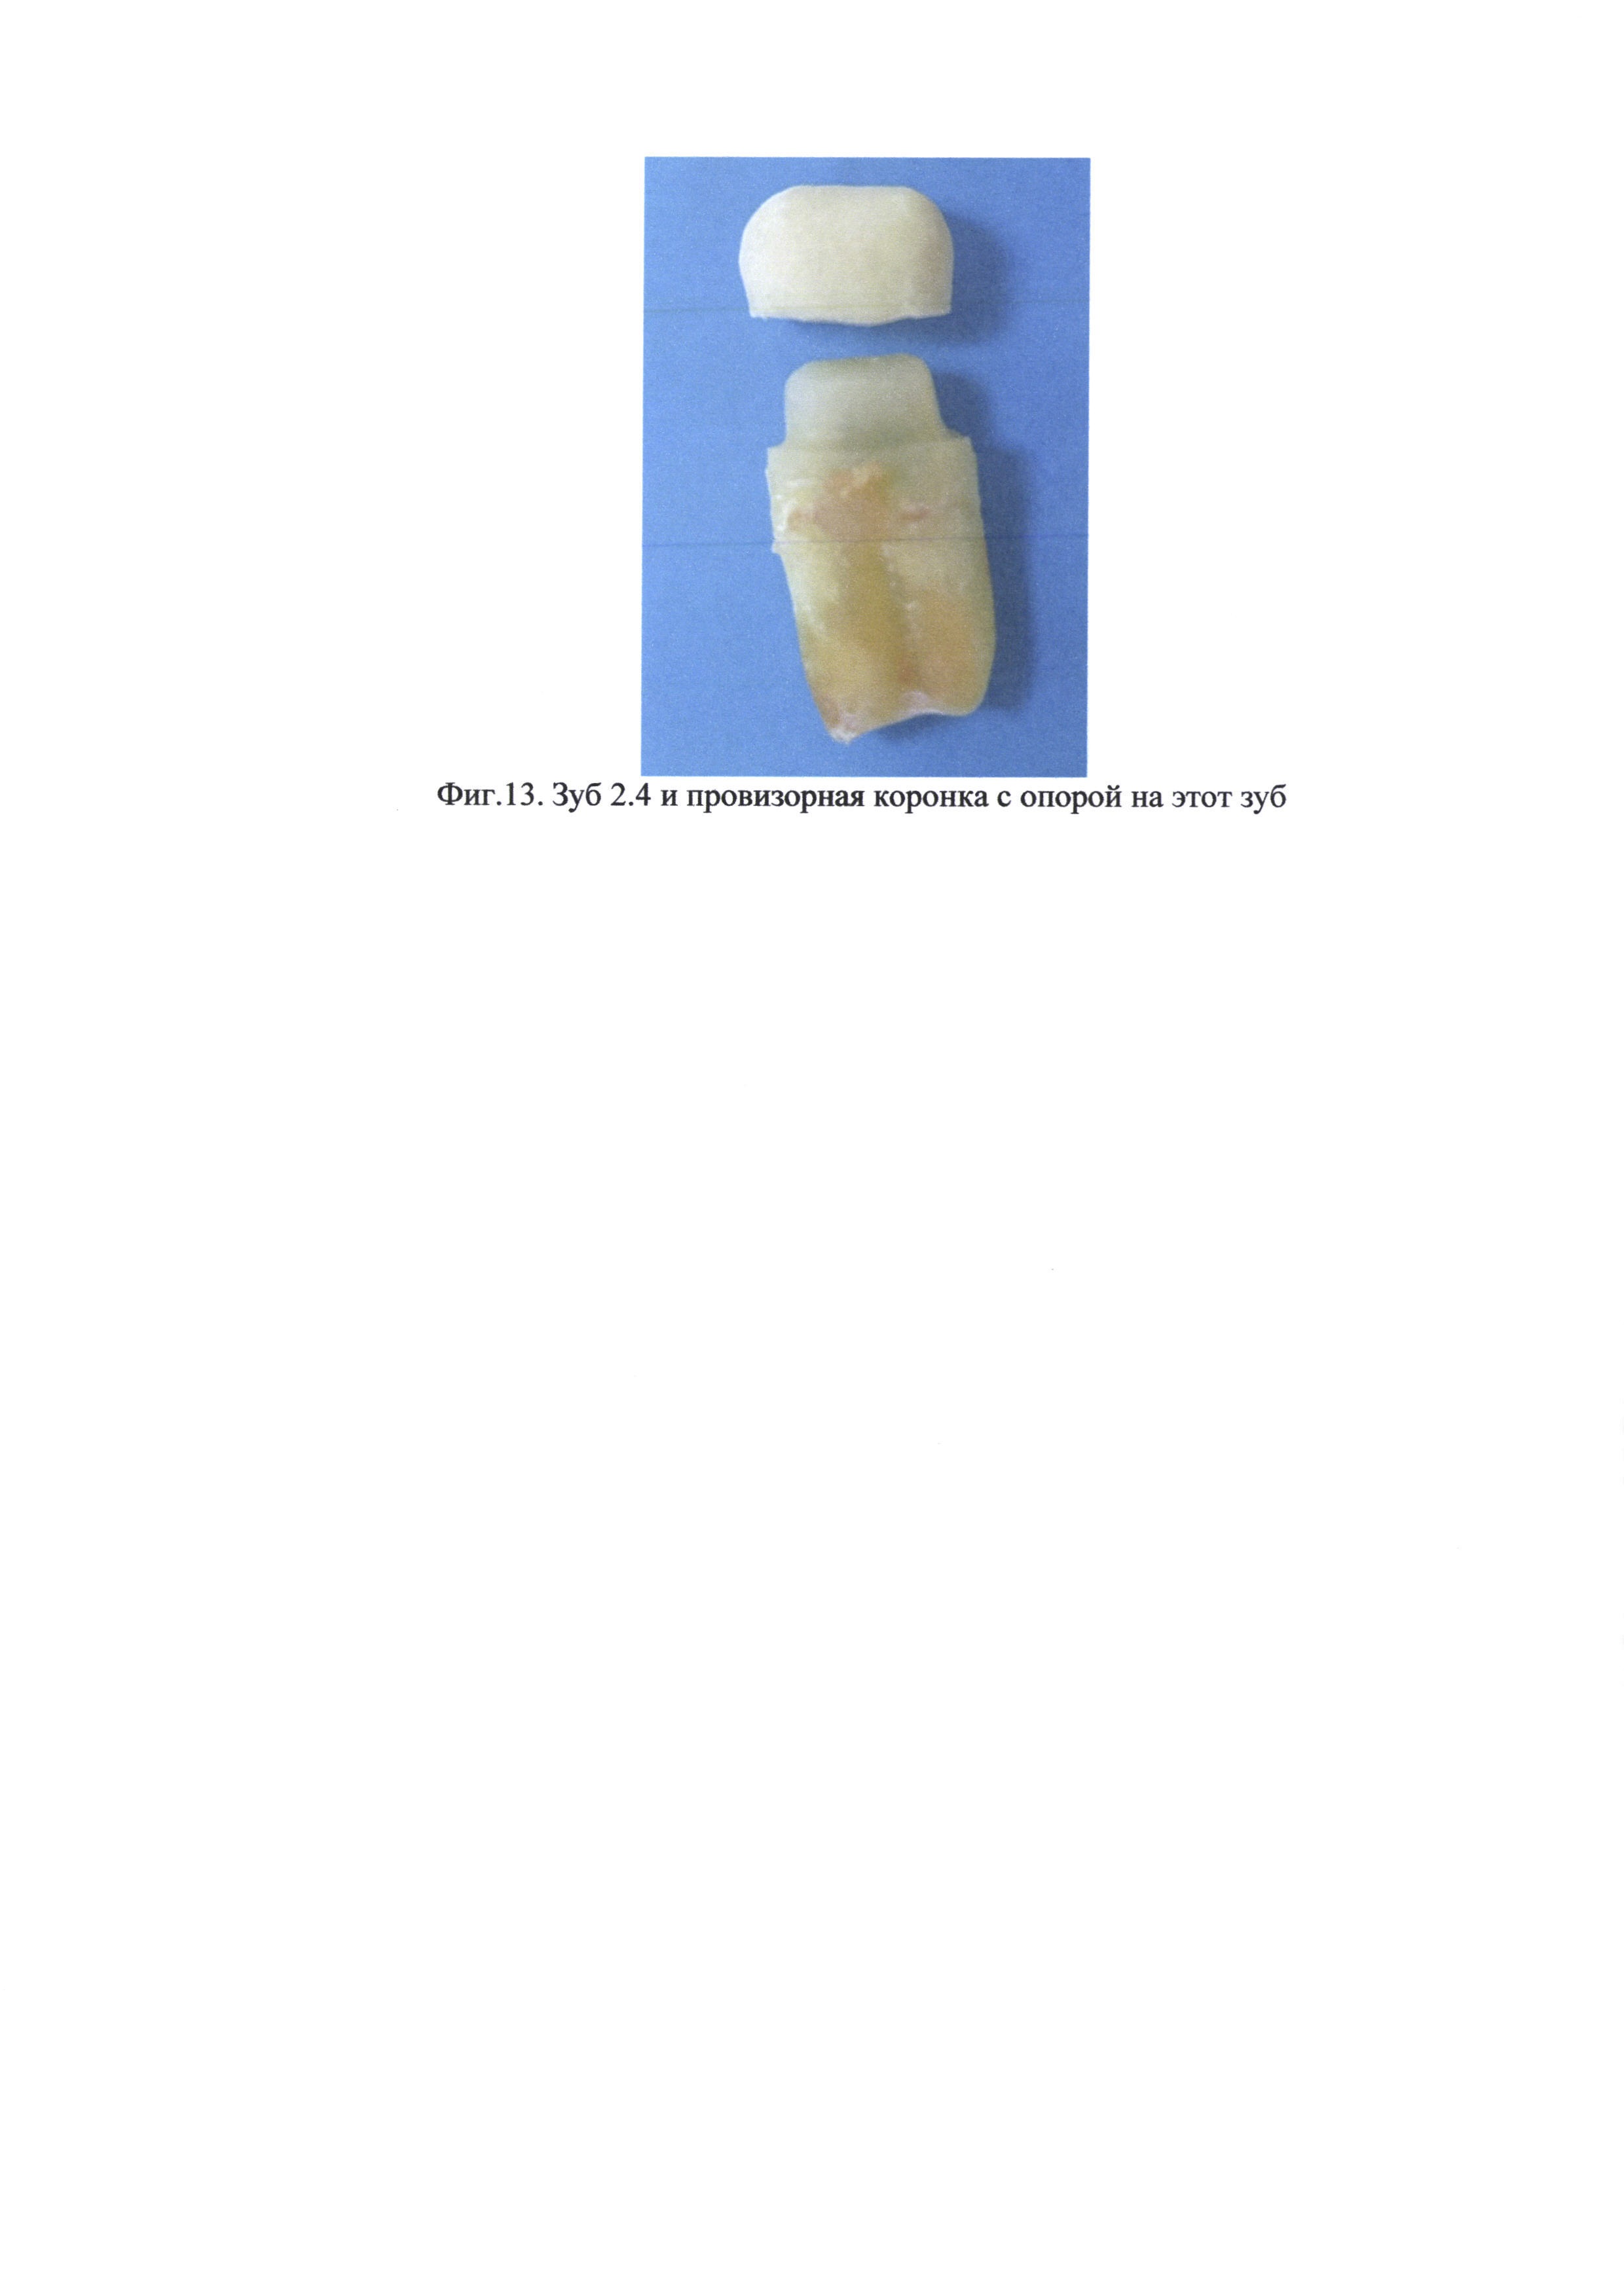 Способ внеротового одонтопрепарирования и изготовления провизорной коронки на реплантируемый зуб